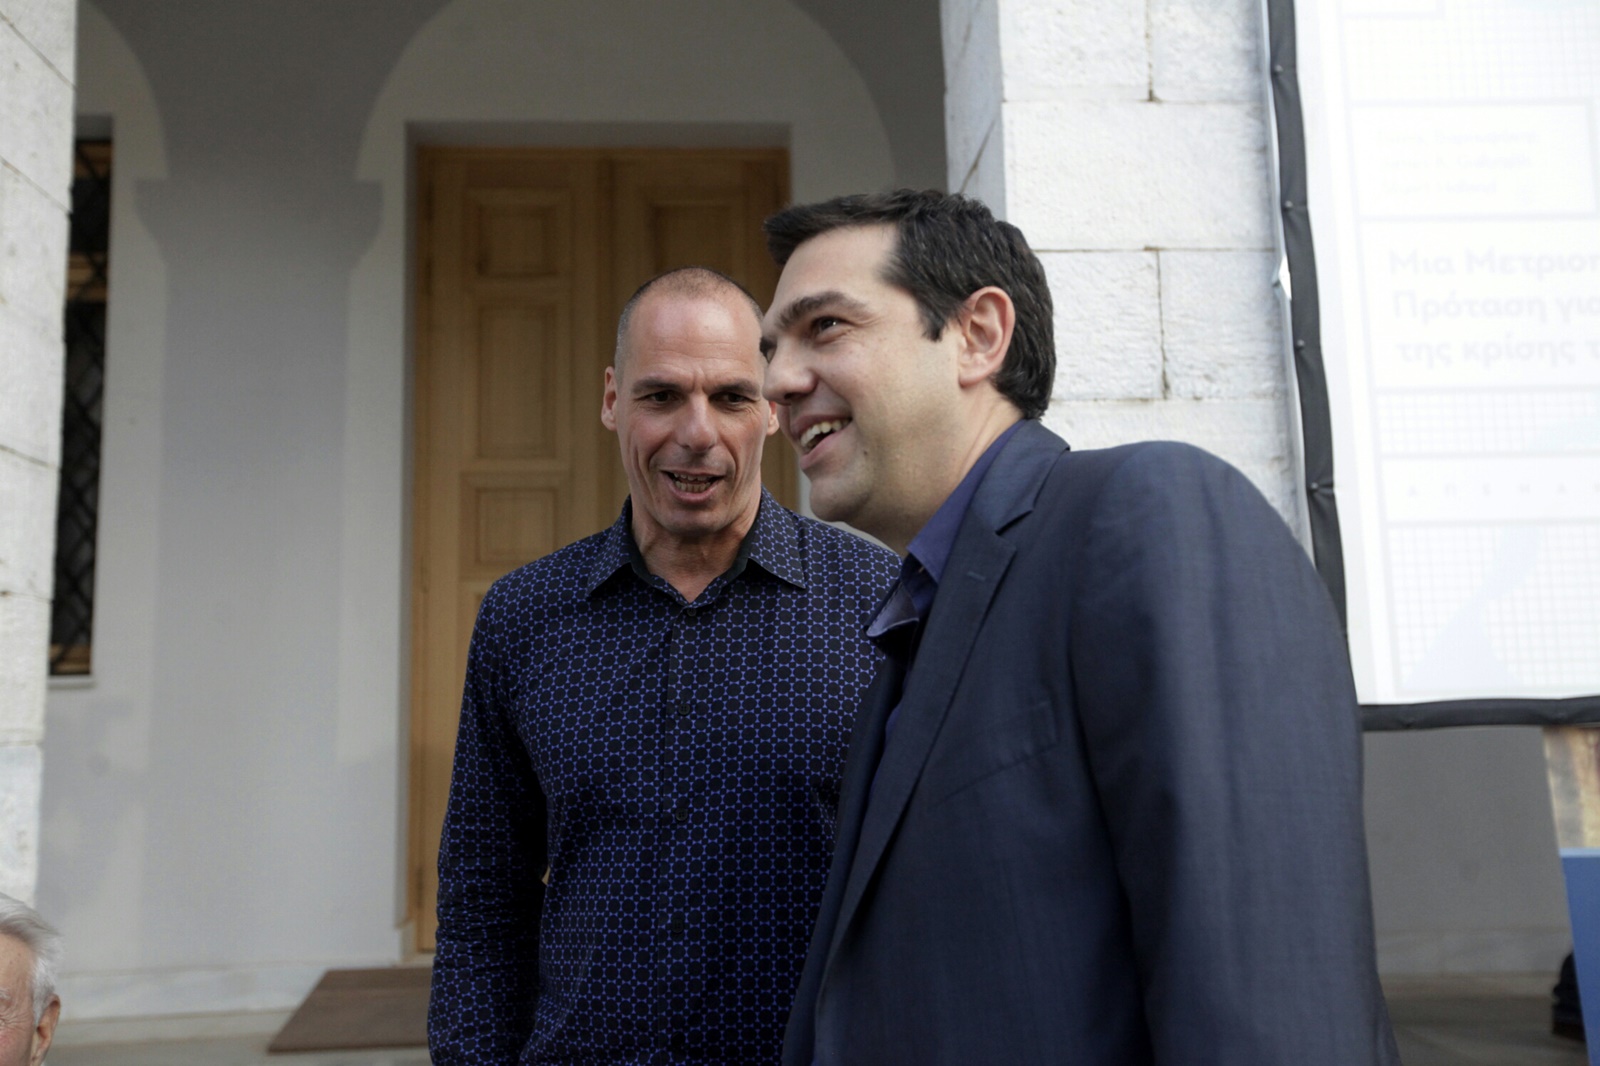 Capital controls Ελλάδα: Το επετειακό βίντεο της Νέας Δημοκρατίας